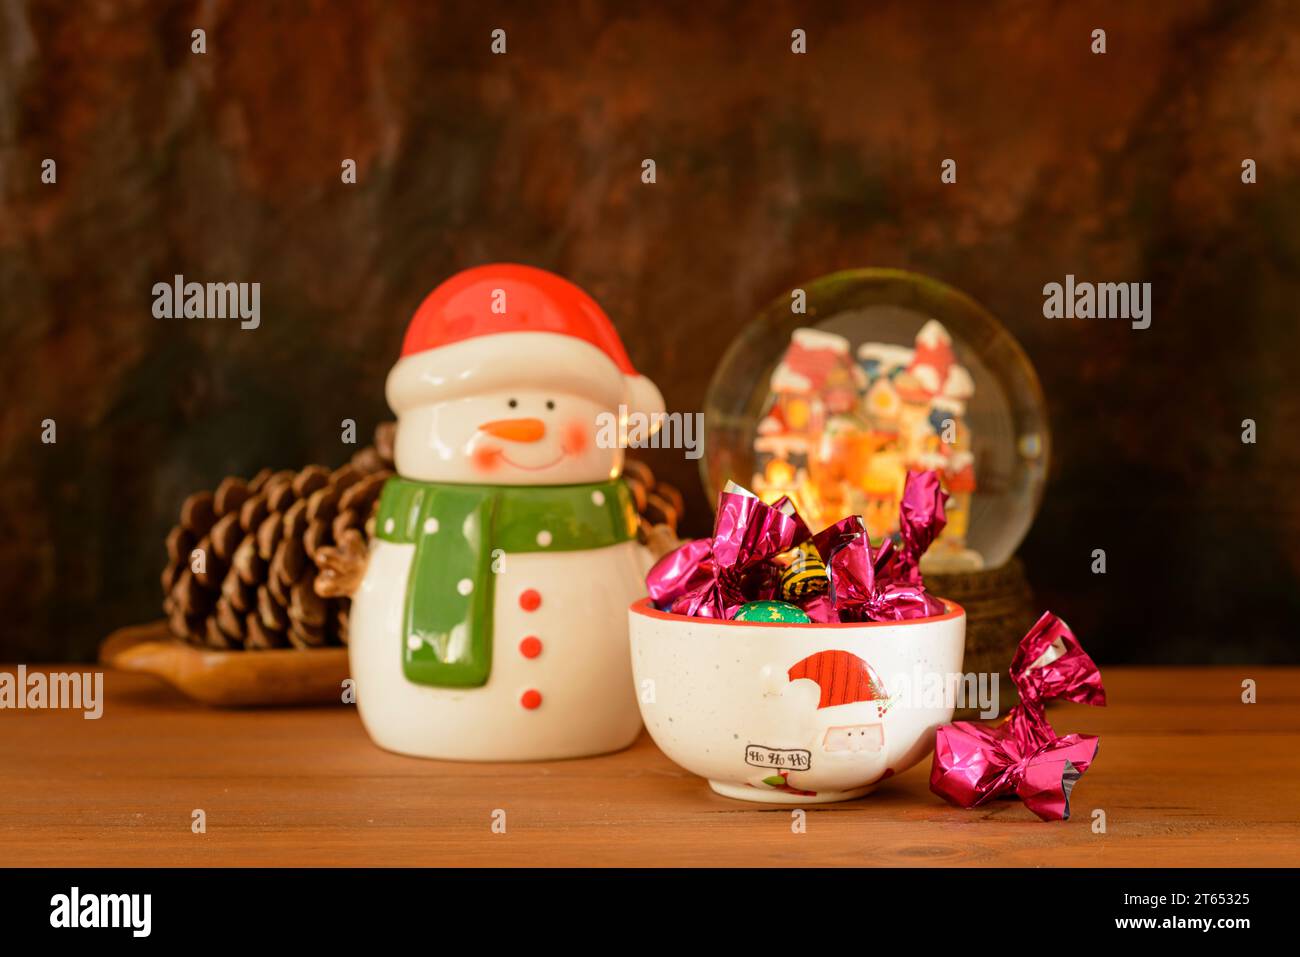 Weihnachtsstillleben mit Porzellanfiguren und anderen Gegenständen, Süßigkeiten und Pralinen, auf einem Holztisch mit dunklem Hintergrund. Stockfoto